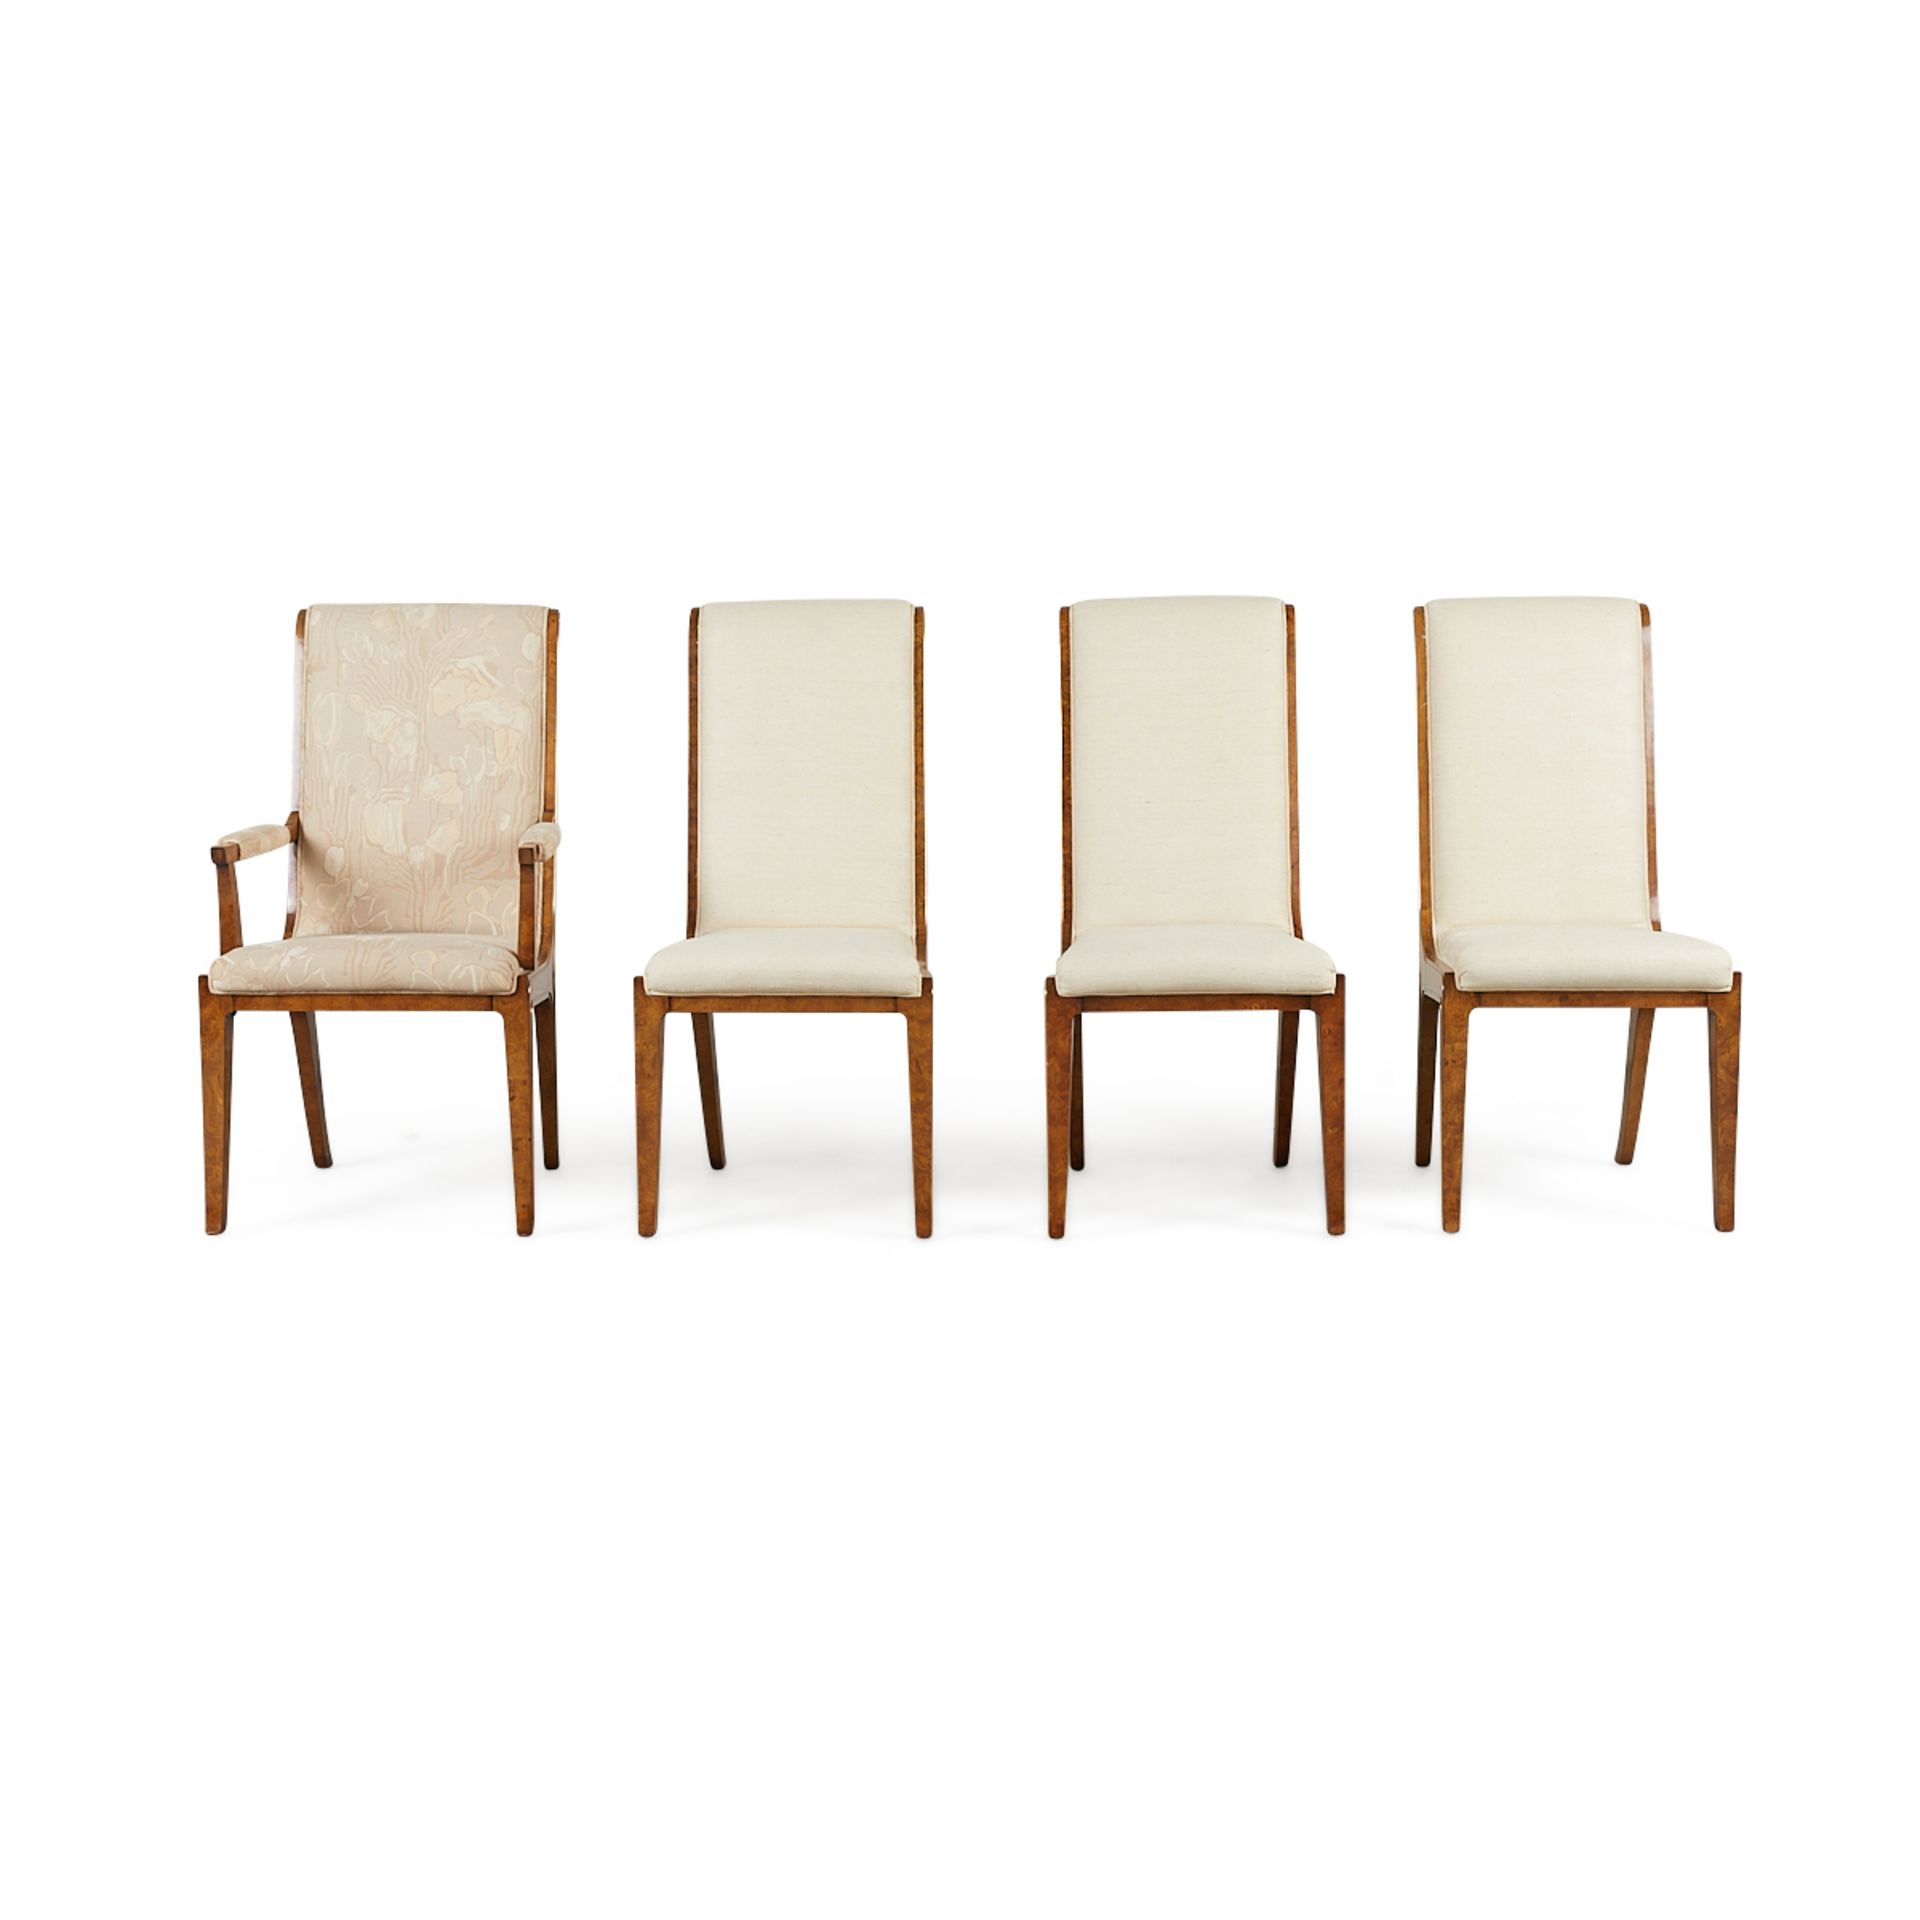 Set 8 Bernhard Rohne MasterCraft Burled Chairs - Image 14 of 24